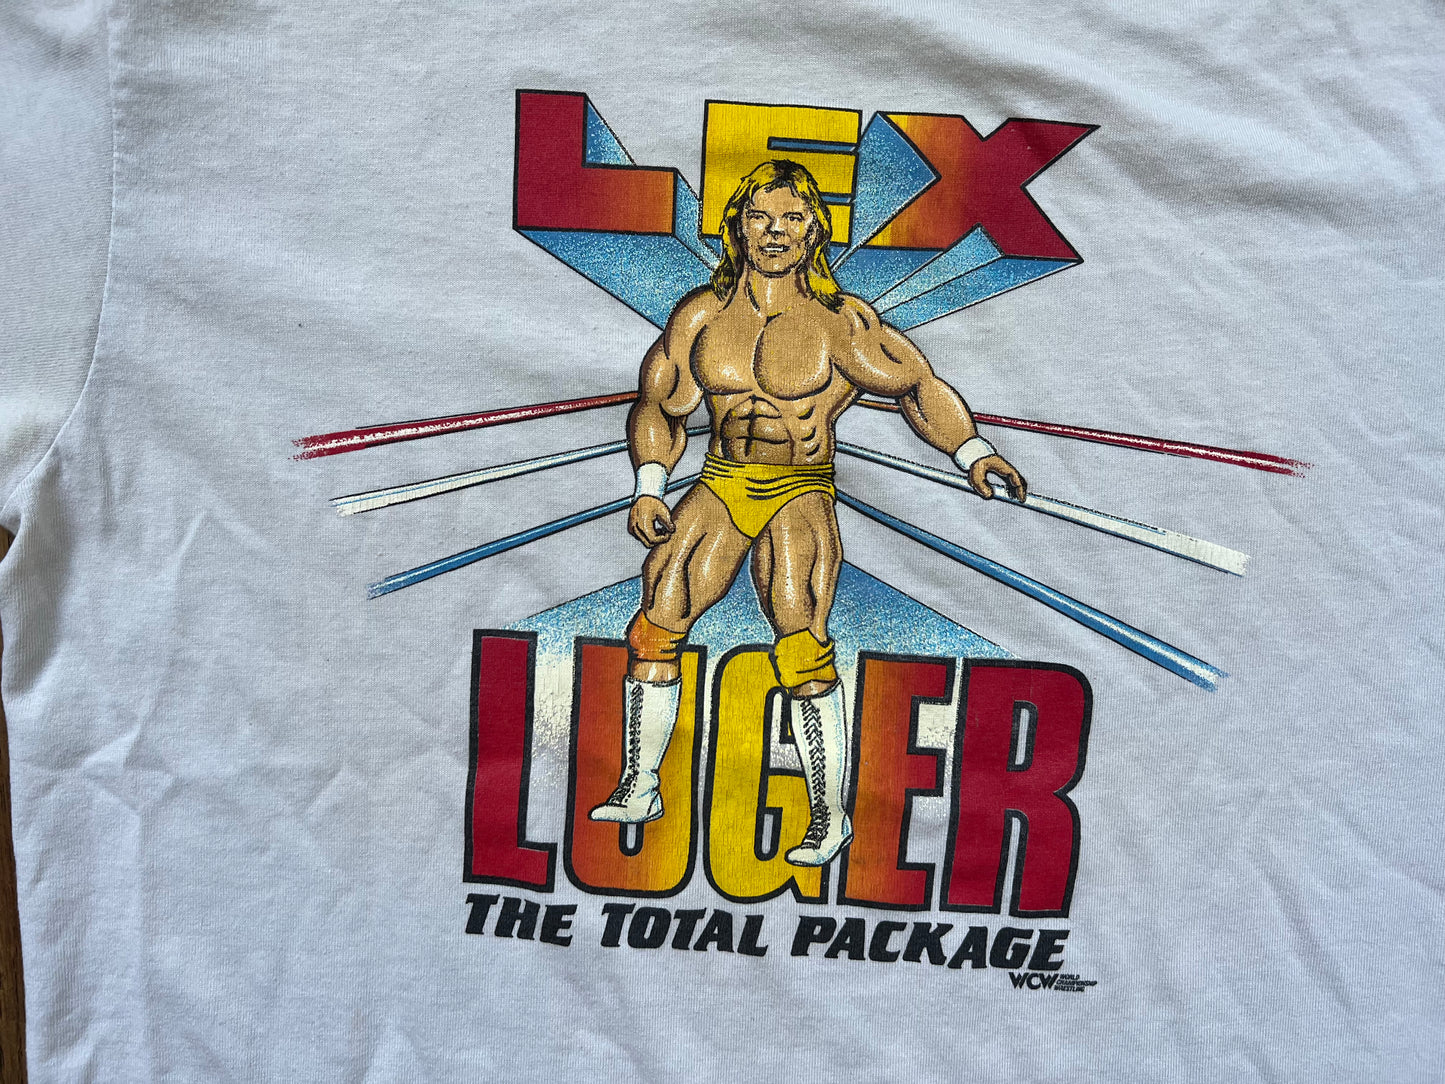 1990 WCW Lex Luger shirt